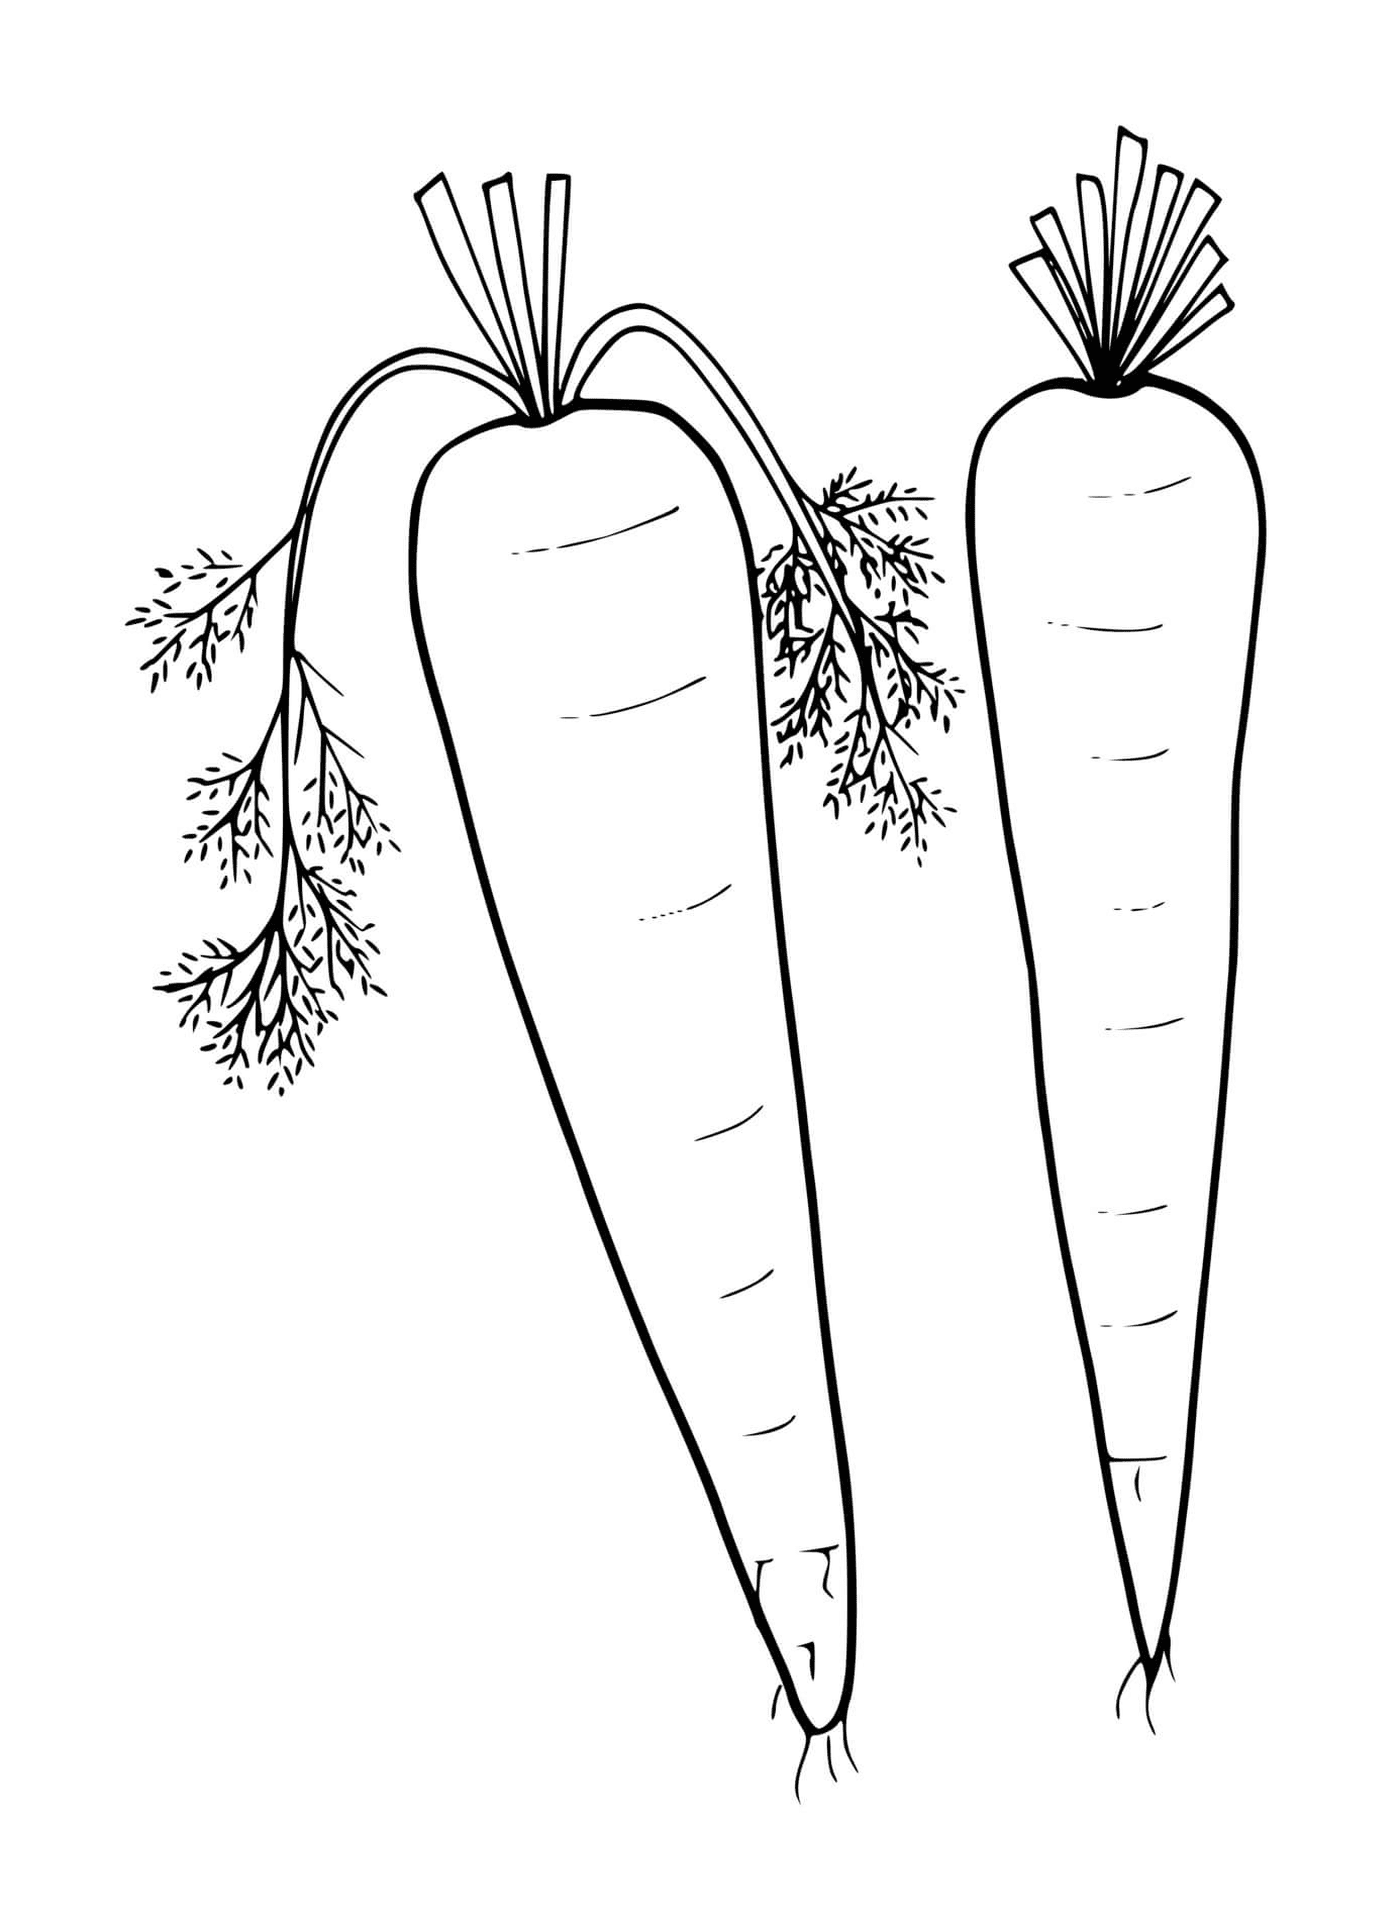  Frische Karotte, zwei Karotten auf weißem Hintergrund 